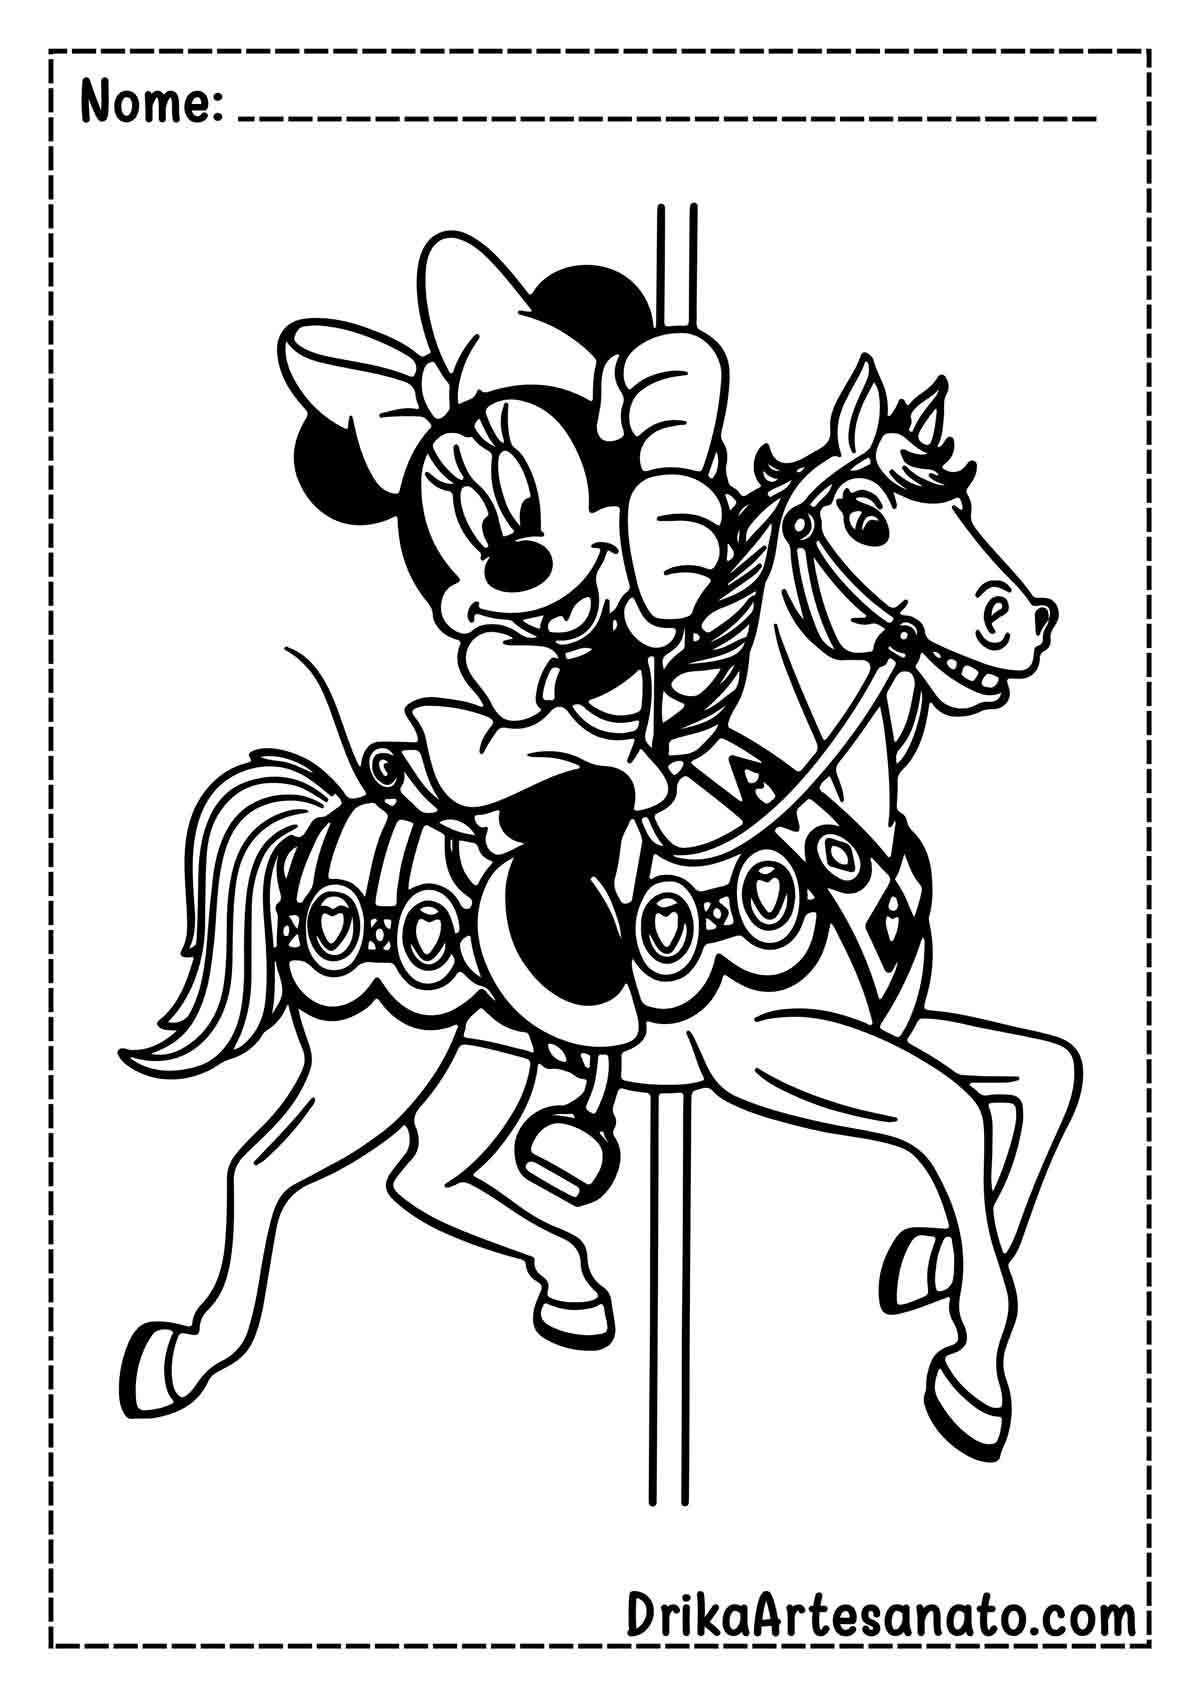 Desenho da Minnie para Imprimir